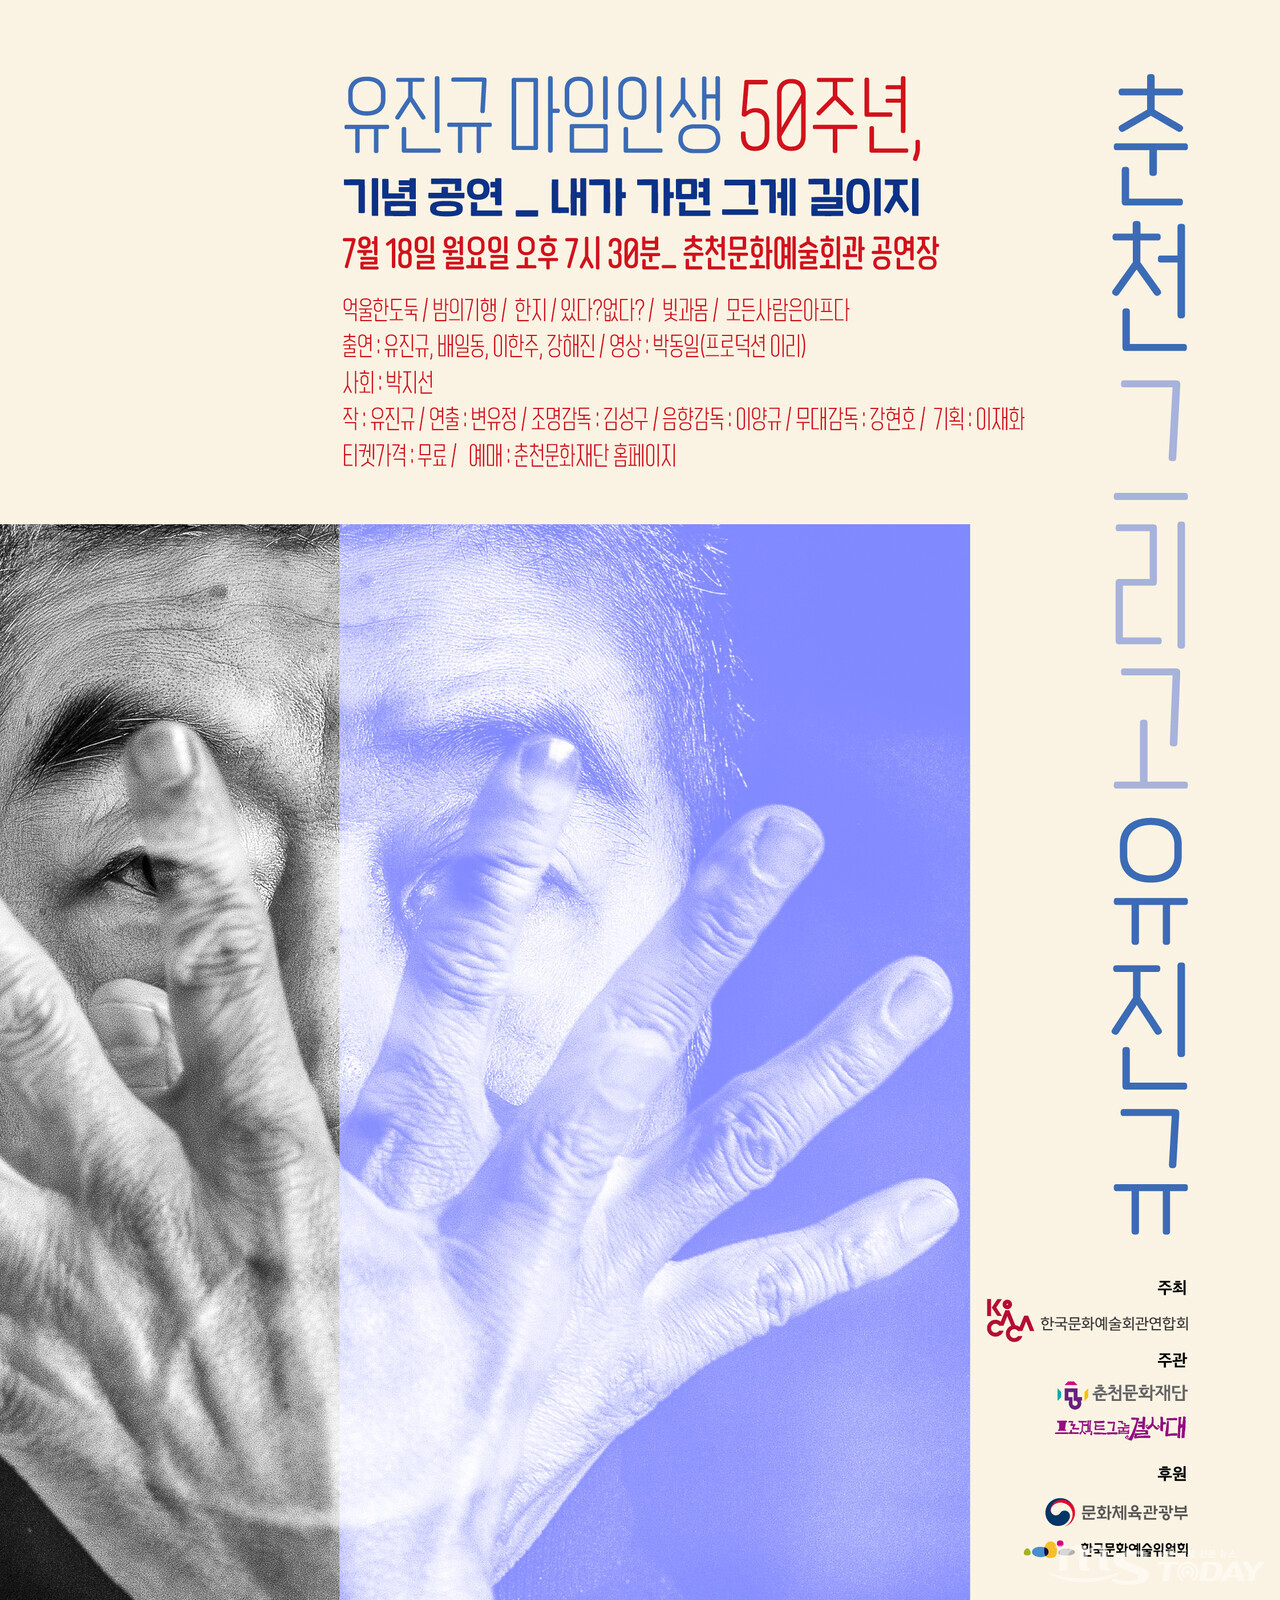 18일 춘천문화예술회관에서 열리는 유진규 마임이스트 50주년 기념 공연 '내가 가면 그게 길이지' 포스터